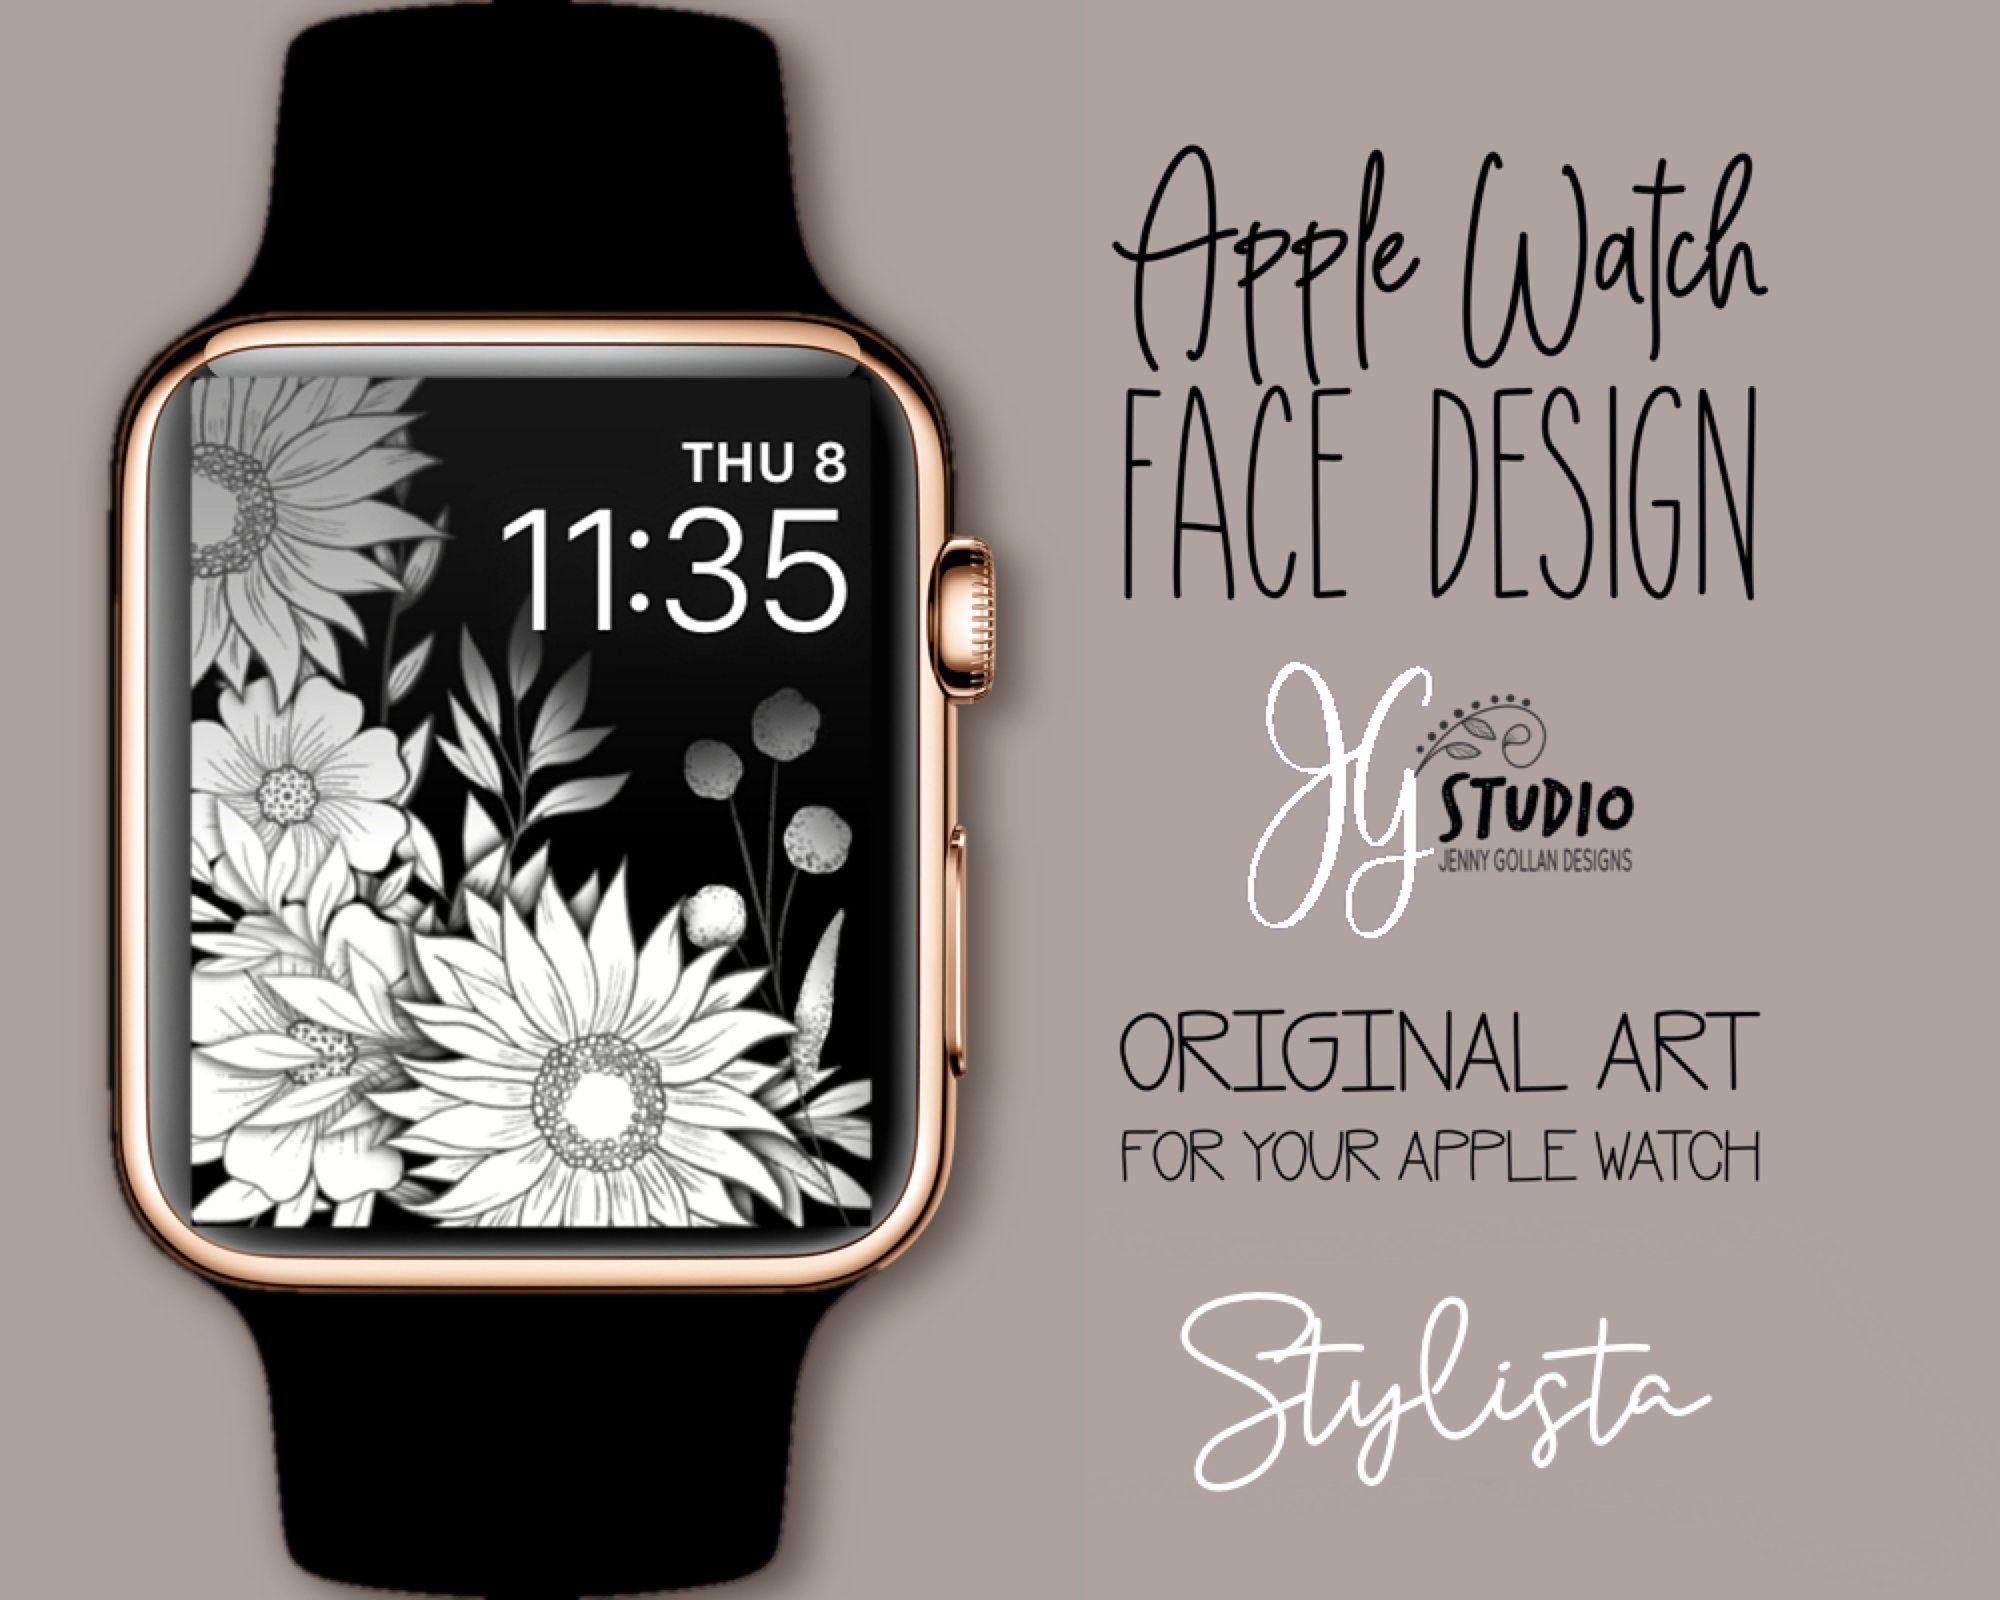 Apple Watch Wallpaper Stylista Faces